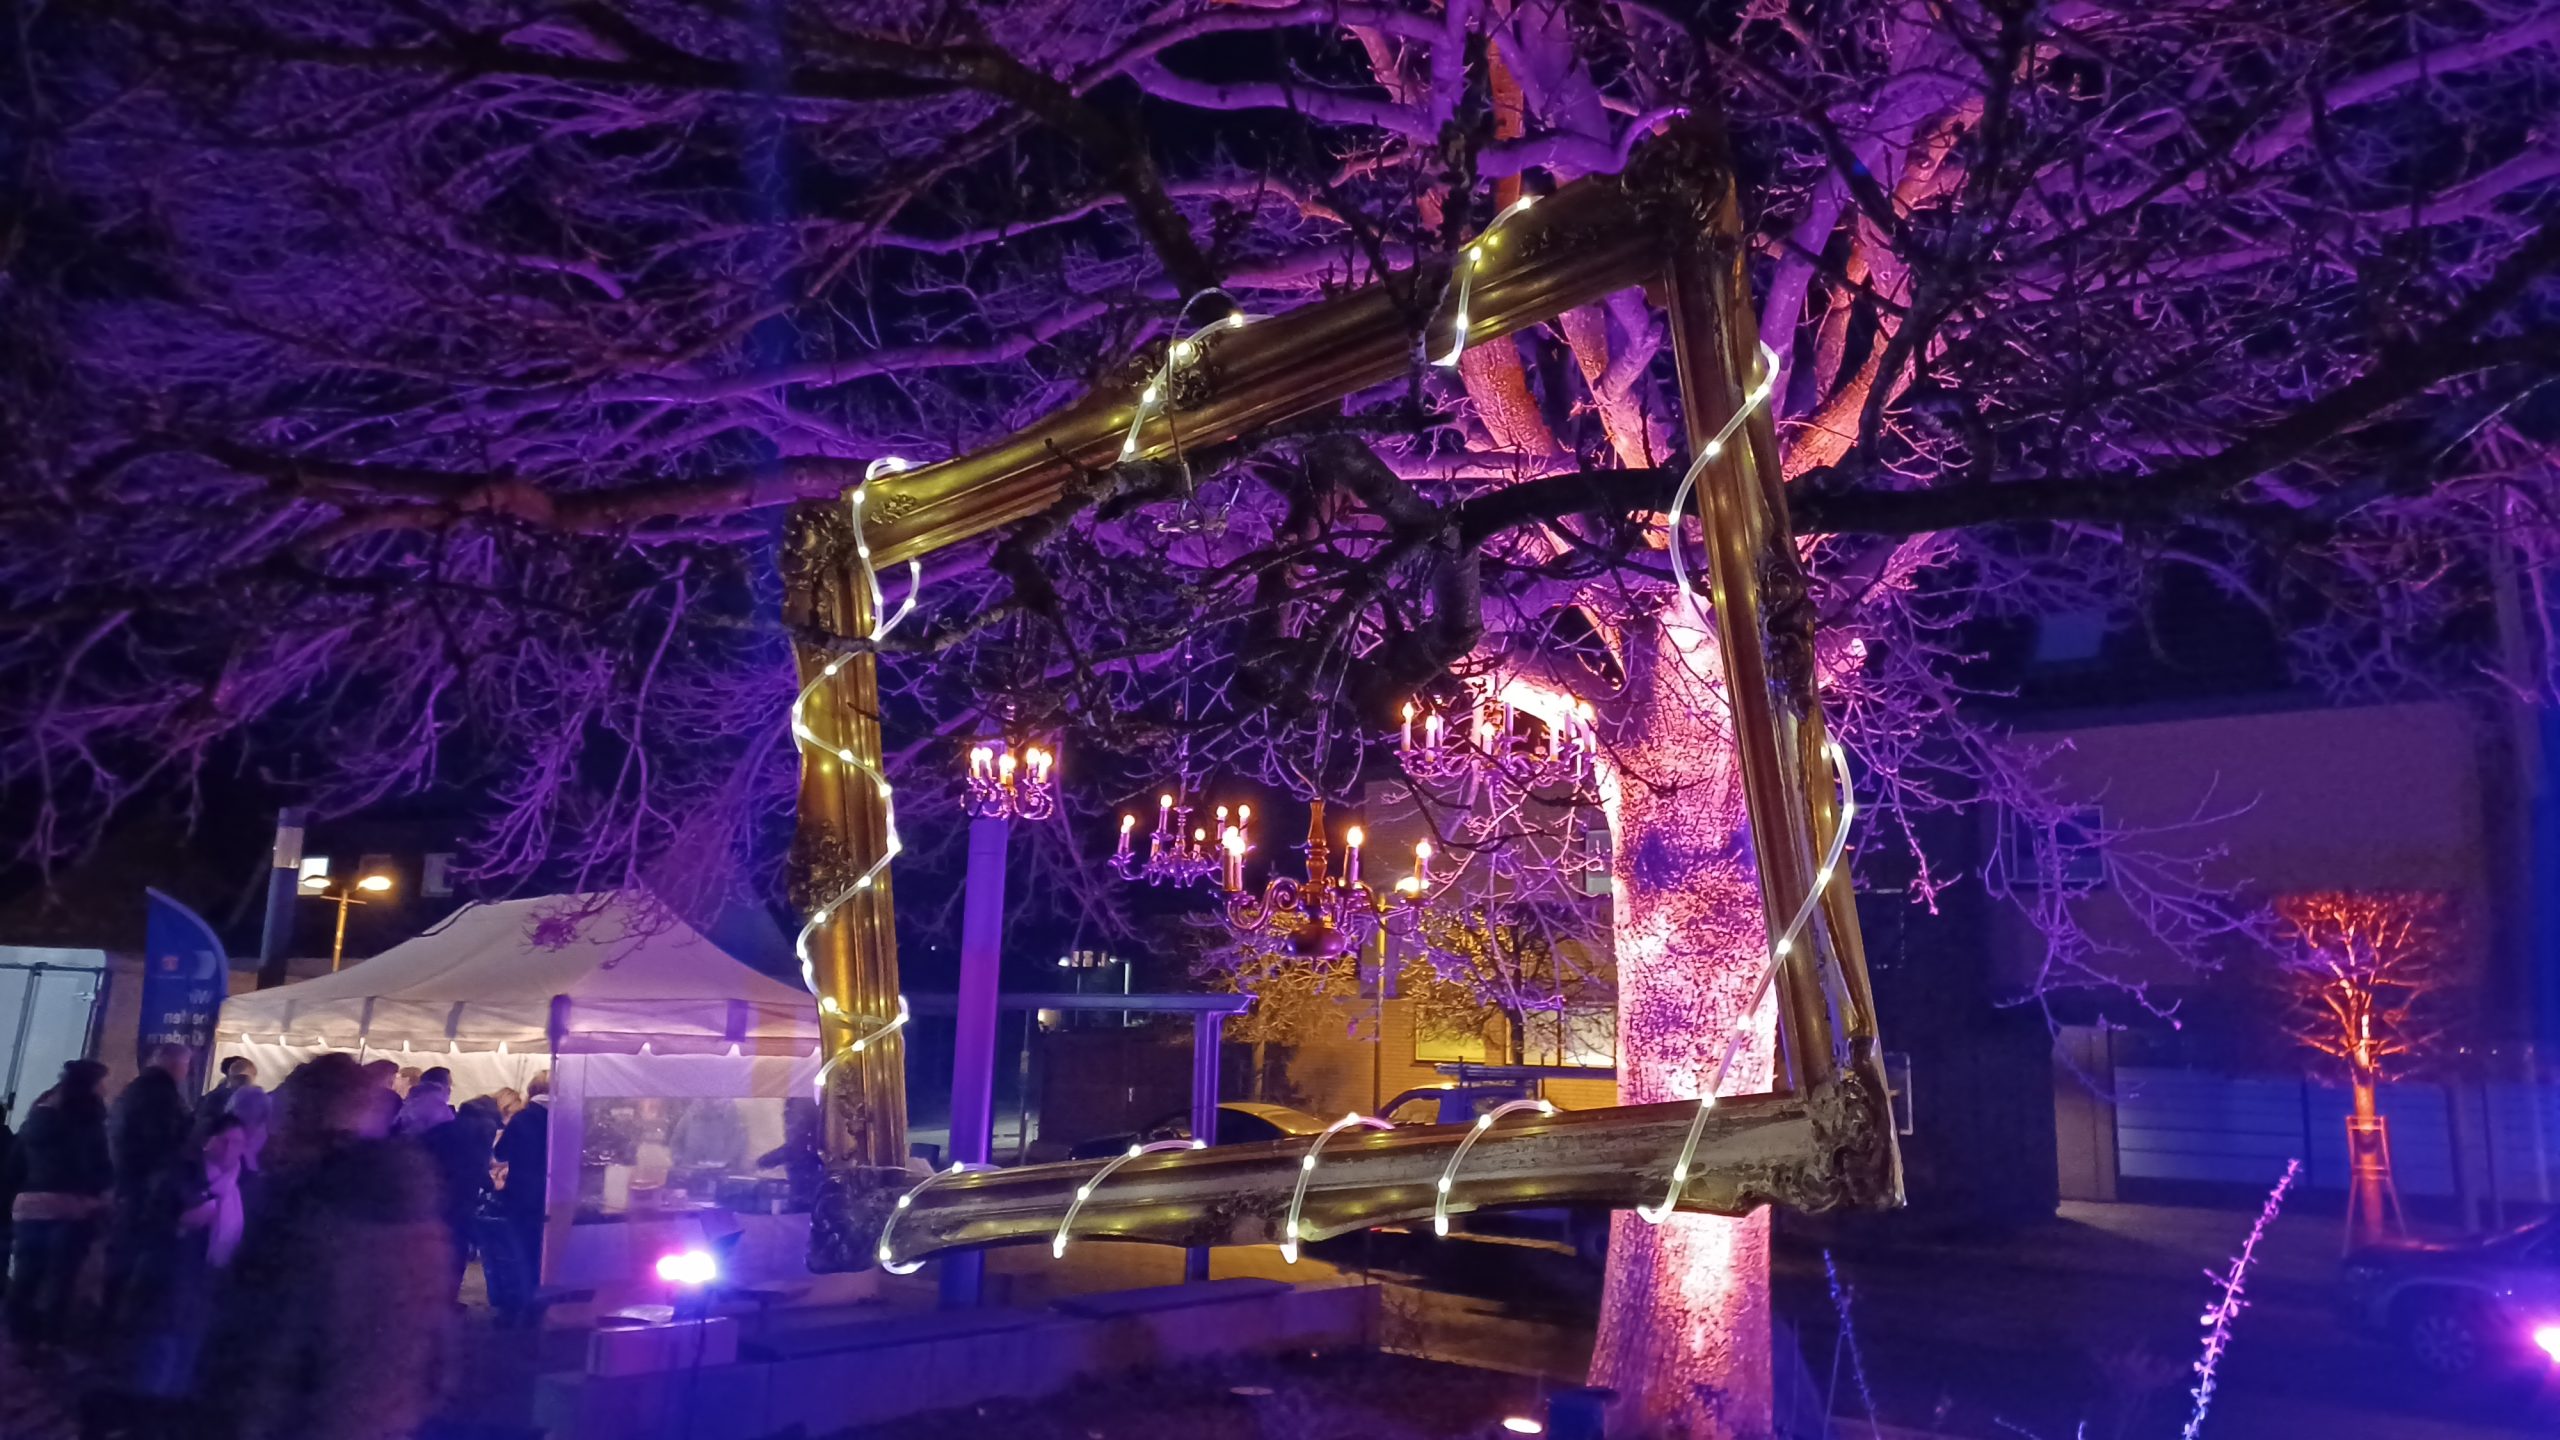 Farbig angeleuchteter Baum mit aufgehängten Kronenleuchtern und einem großen Bilderrahmen.